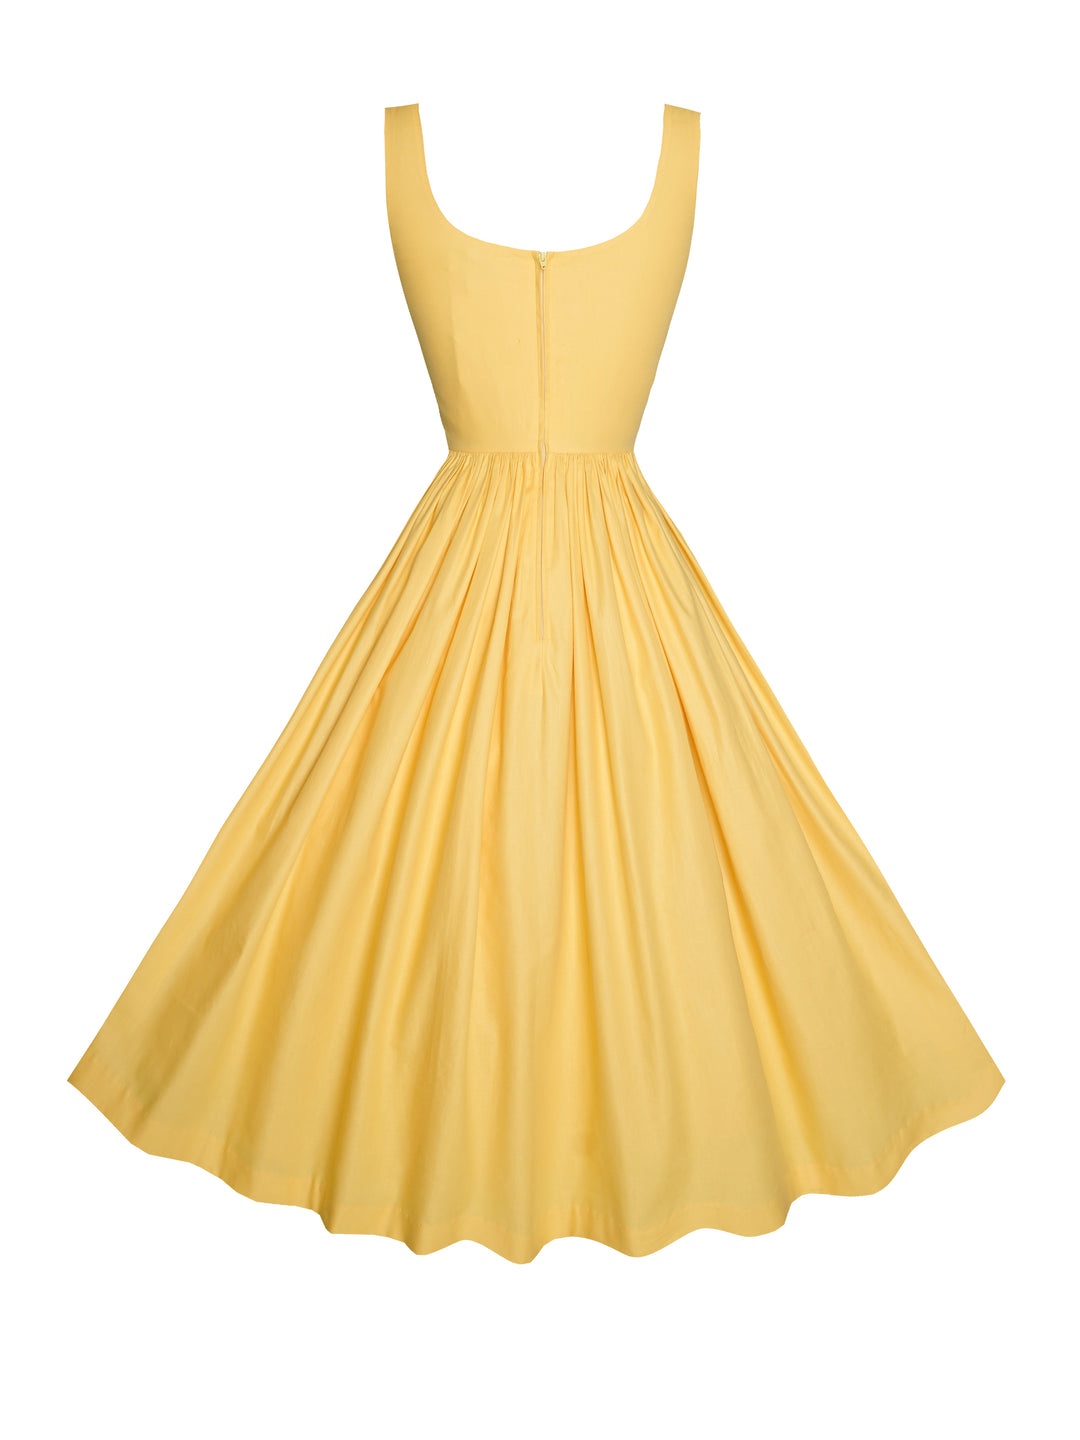 MTO - Emily Dress Golden Yellow Cotton